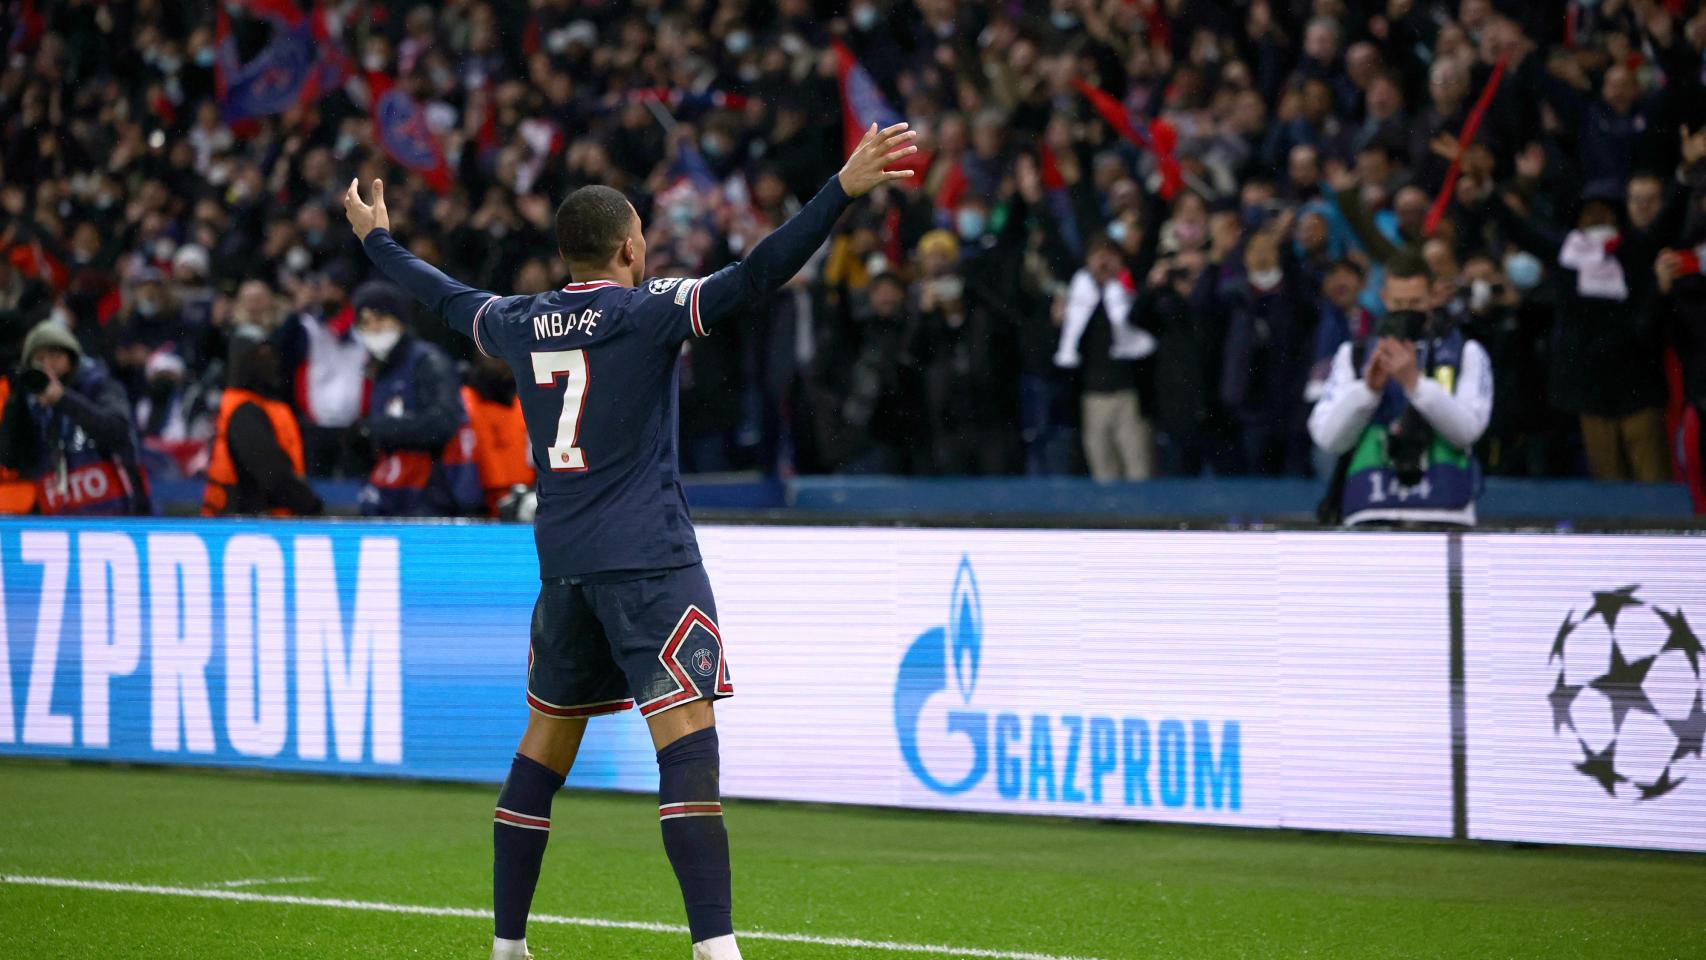 PSG 1-0 Real Madrid: Mbappé acaba con el Real Madrid el último minuto tras la heroica de Courtois